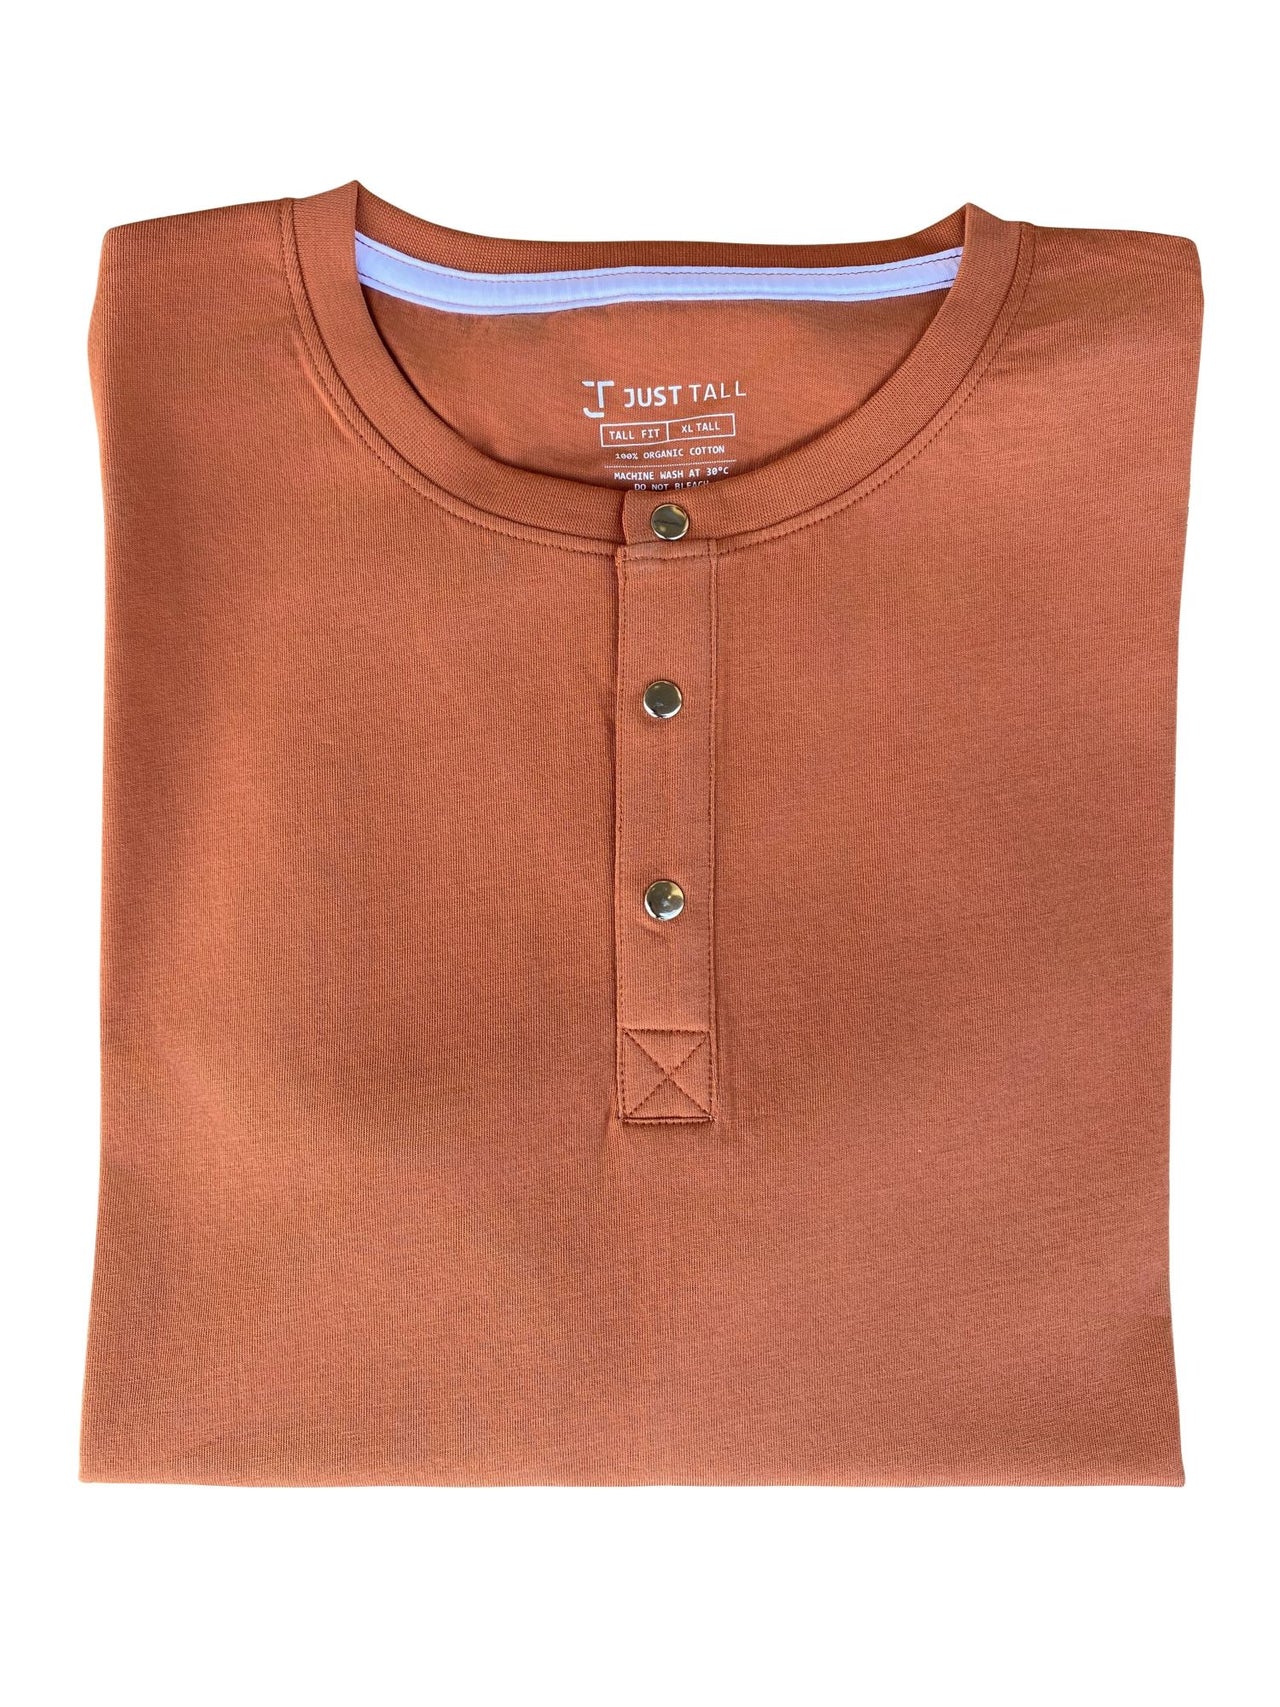 A close up of a tall brown short sleeve henley shirt.